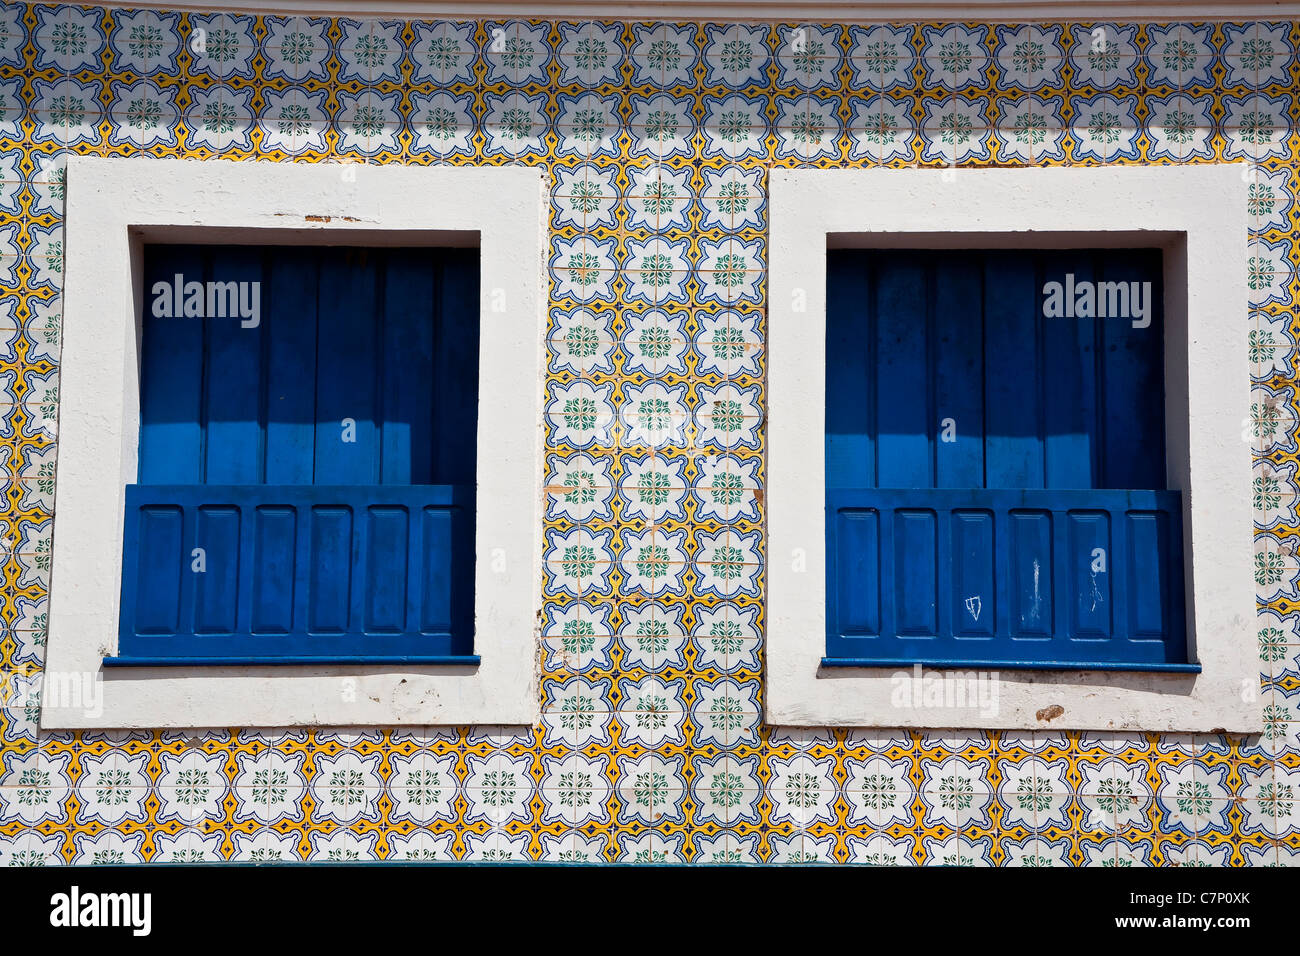 Sobrados a due piani case coloniali facciate di azulejos portoghesi principali attrazioni per i visitatori a Alcântara Maranhão Brasile Foto Stock